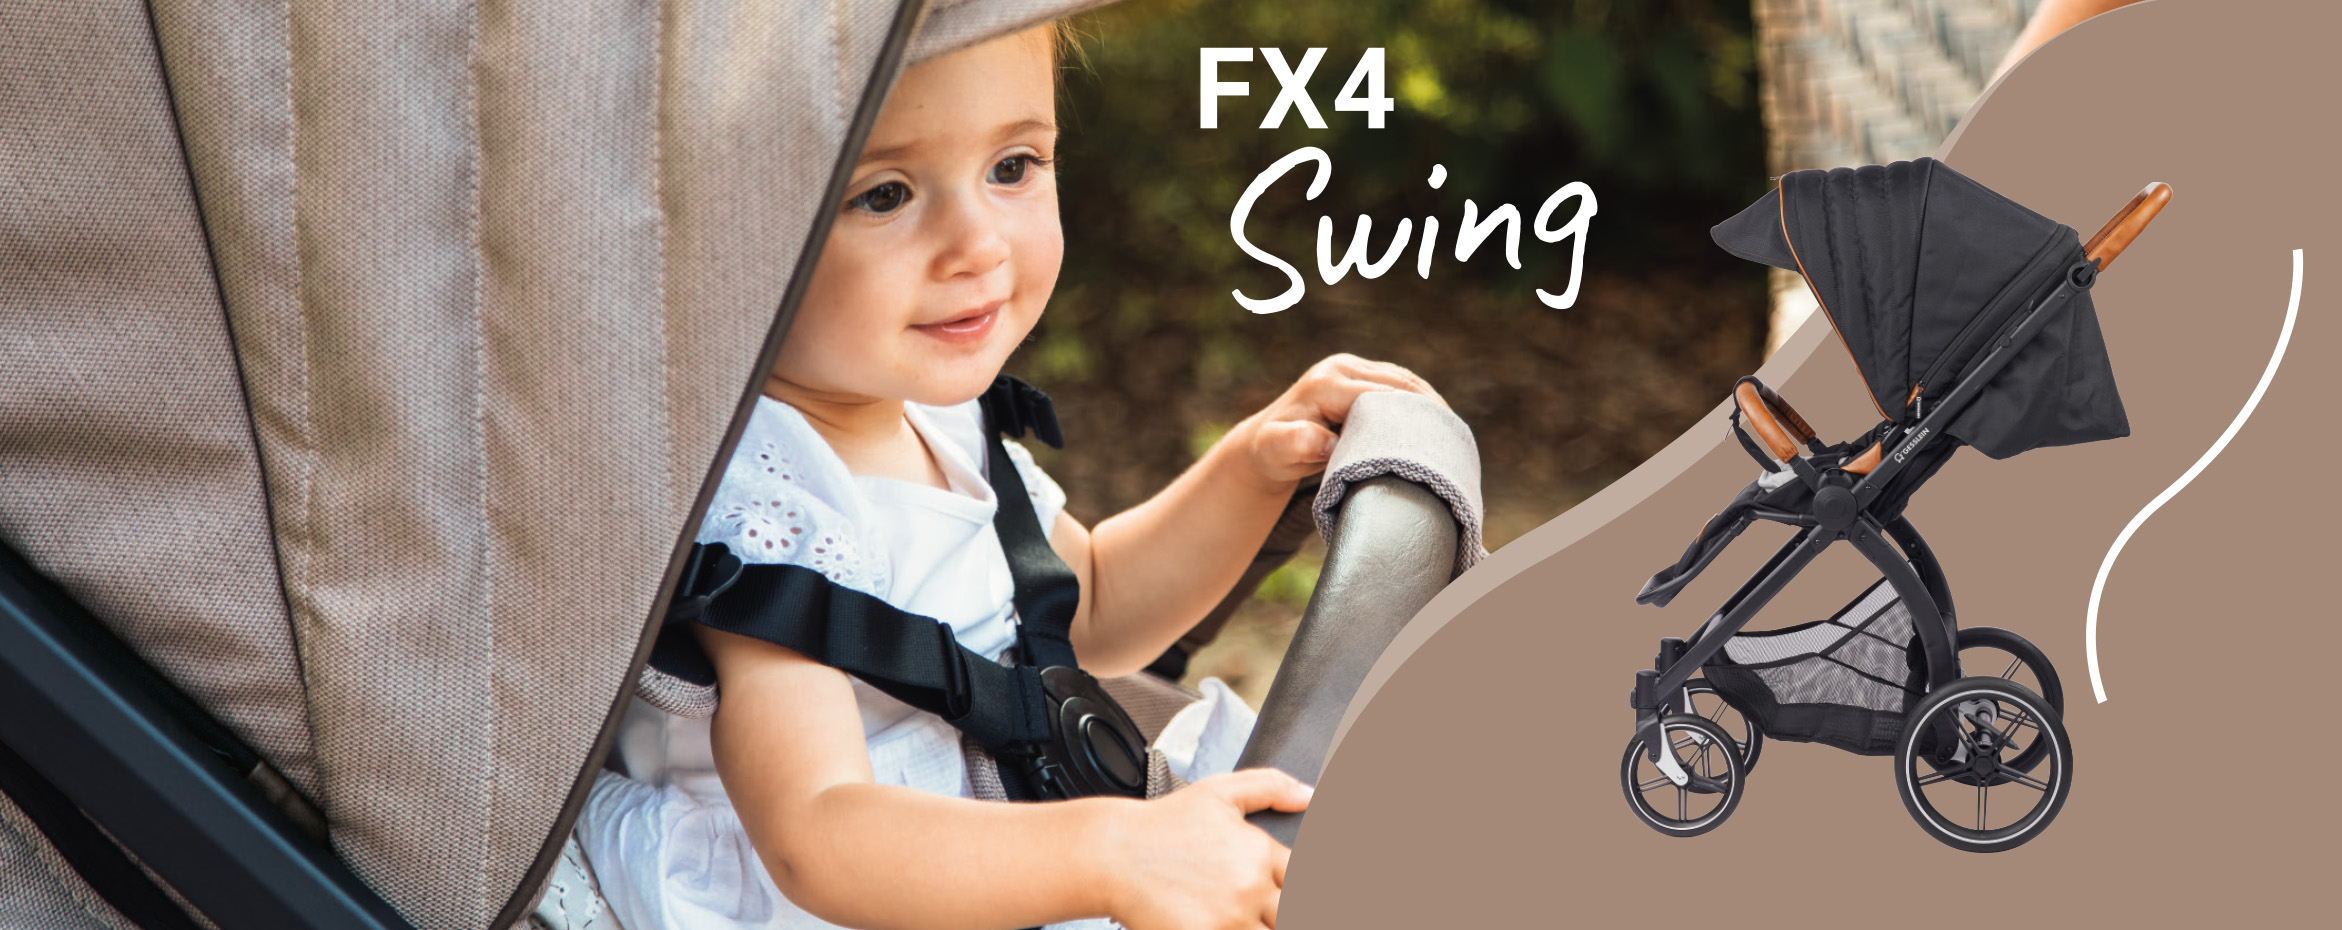 FX4 Swing